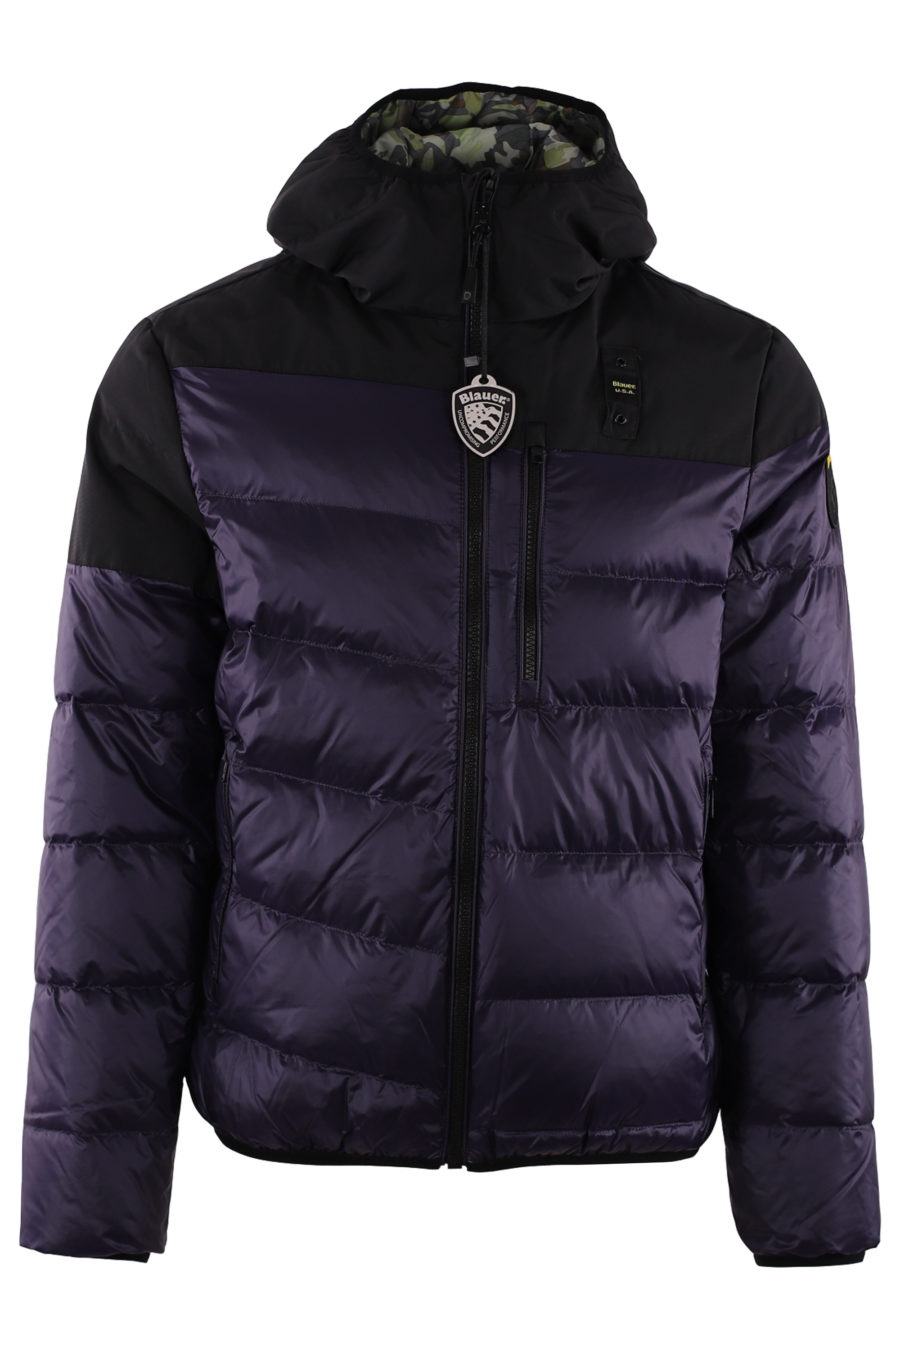 Reversible dark purple reversible jacket - IMG 9423